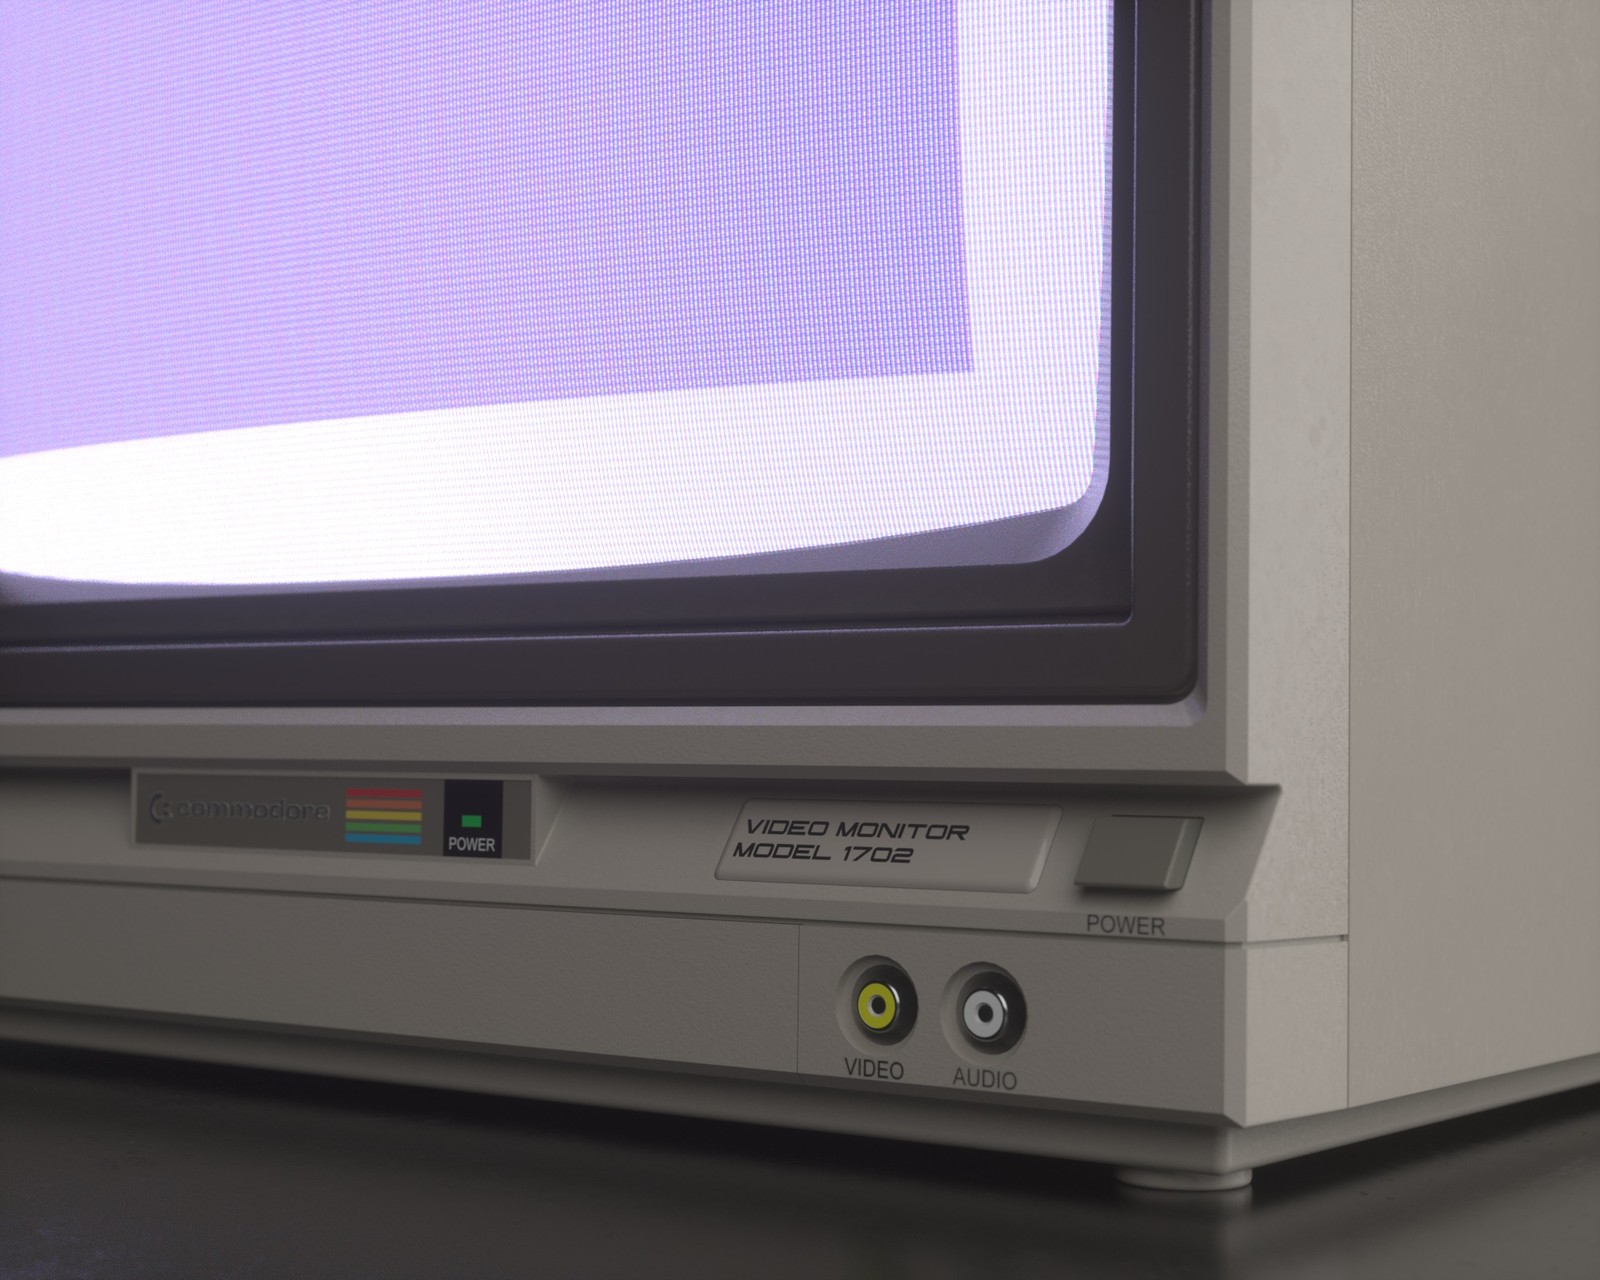 Commodore 1702 Monitor